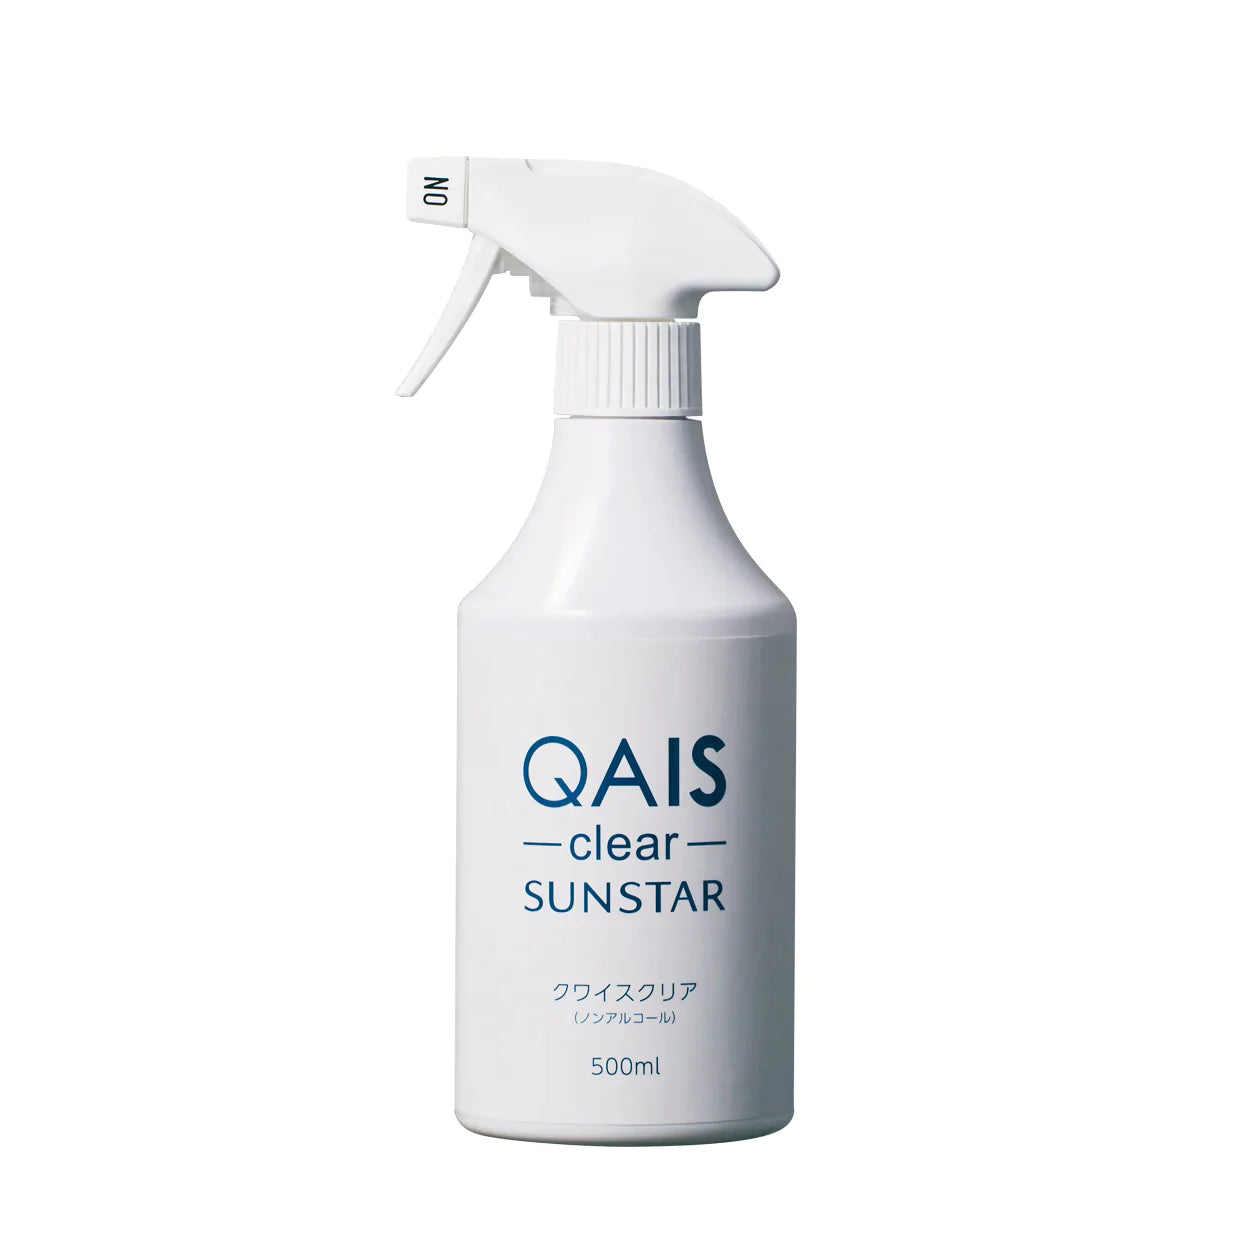 なめても安心。拭き取り除菌もできる消臭スプレー「QAIS-clear- 500ml」